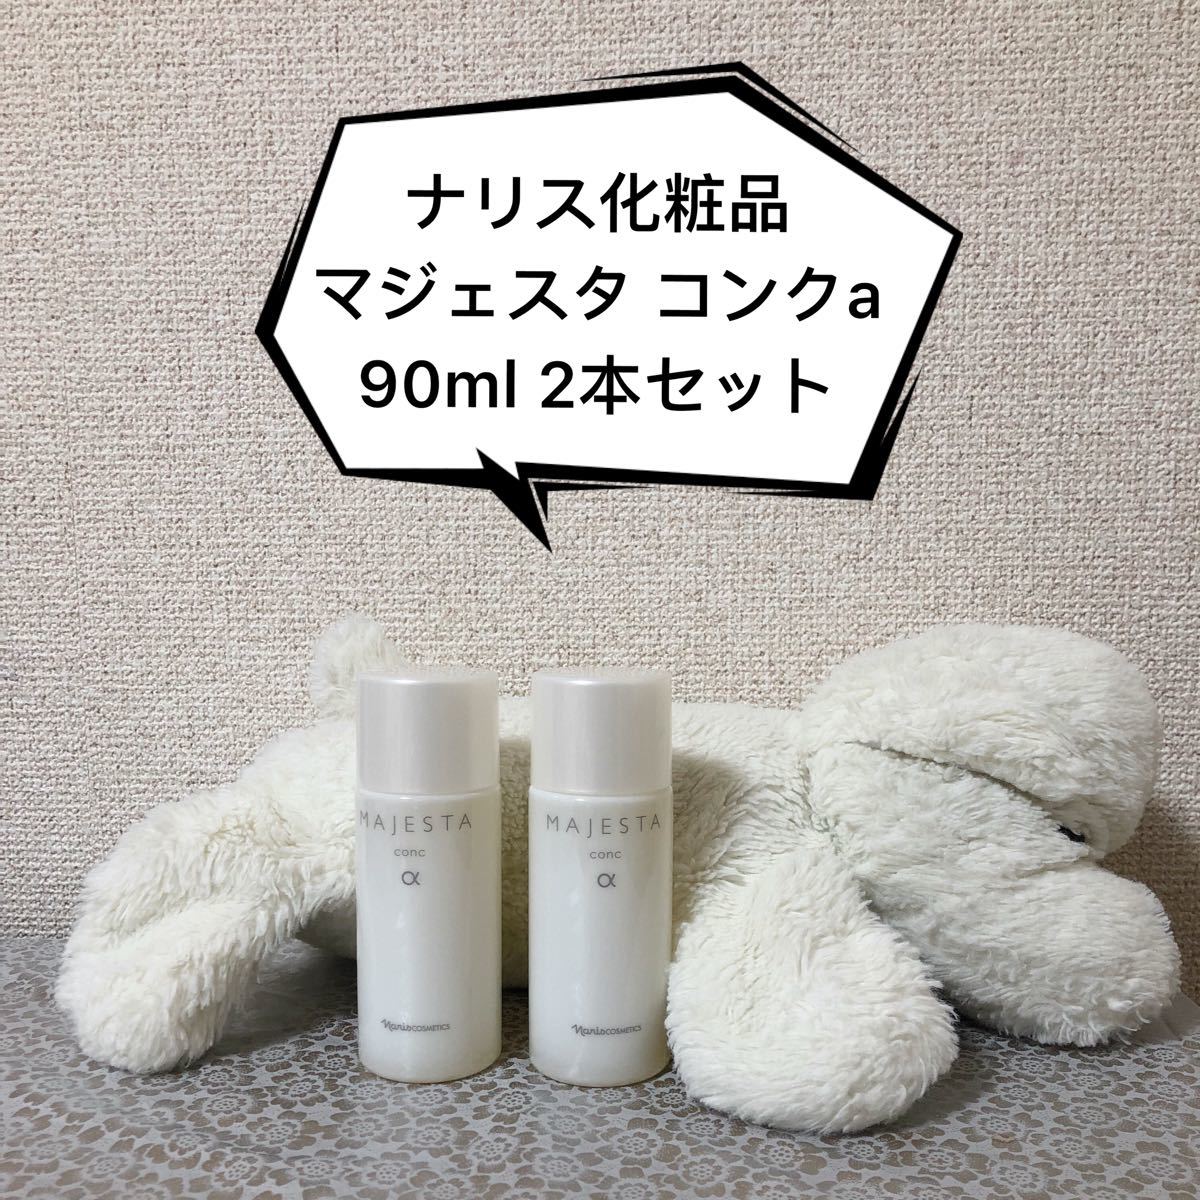 ポイント5倍 ナリス化粧品【マジェスタ】～基礎化粧品3点セット 